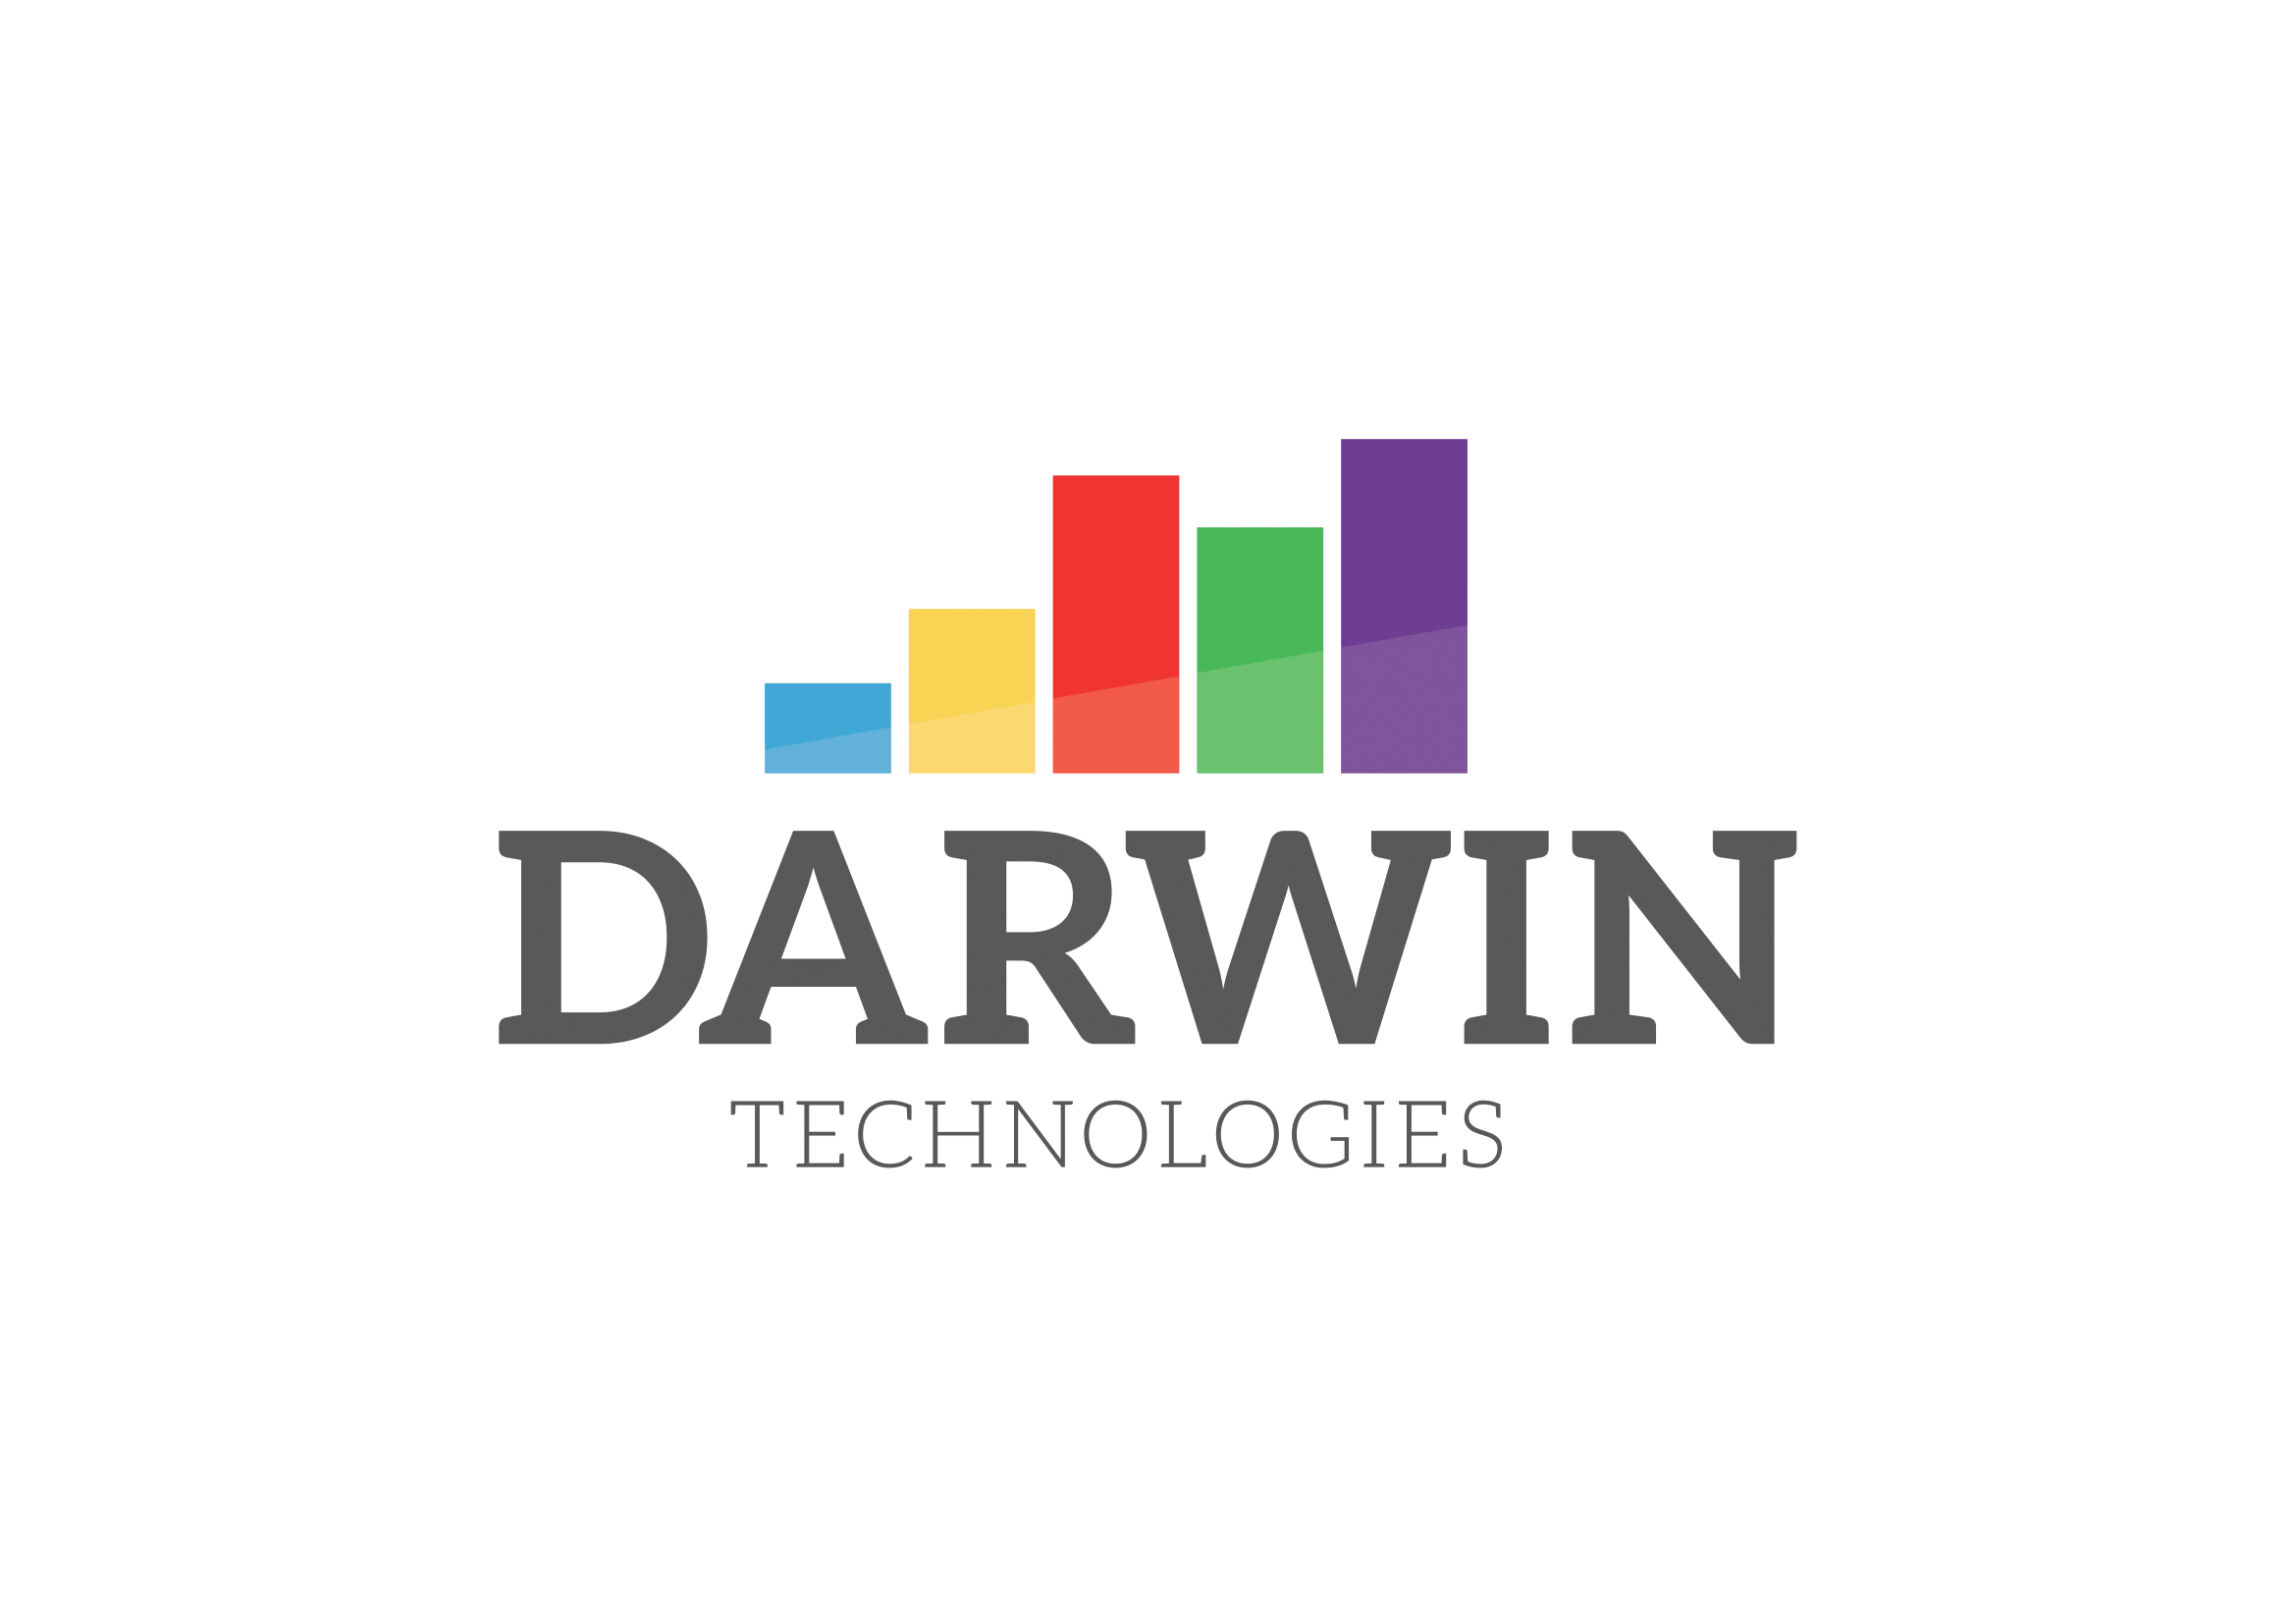 Darwin technologies